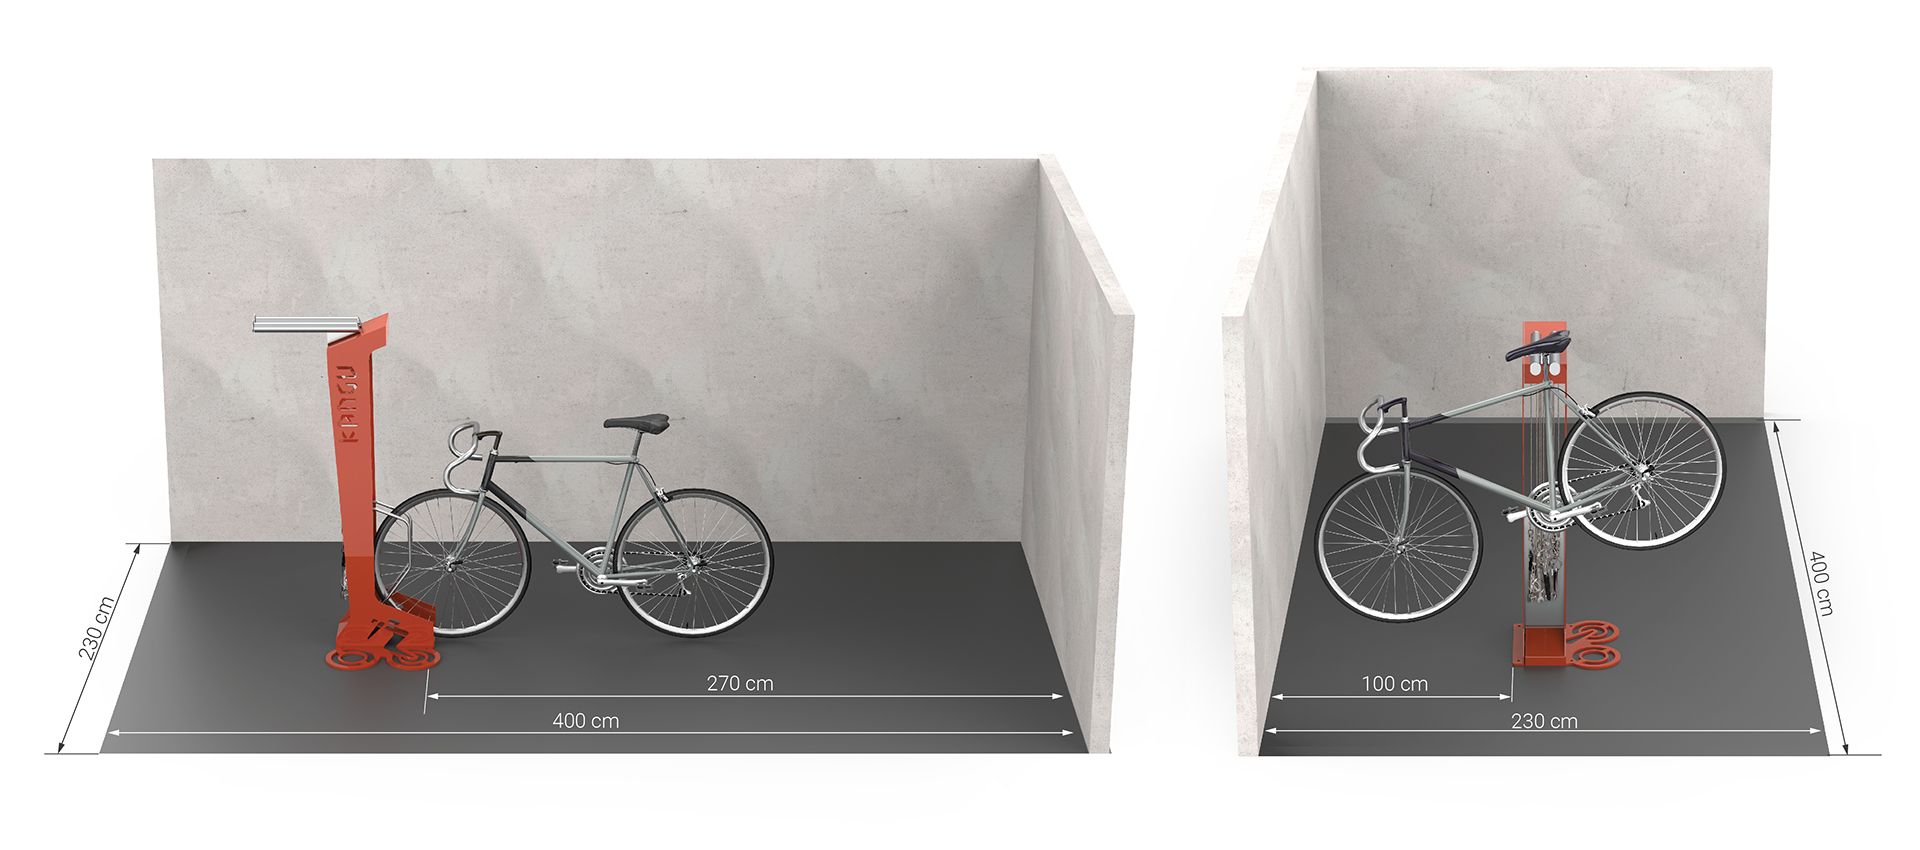 Dimensioni necessarie per il montaggio della stazione per biciclette Kangu